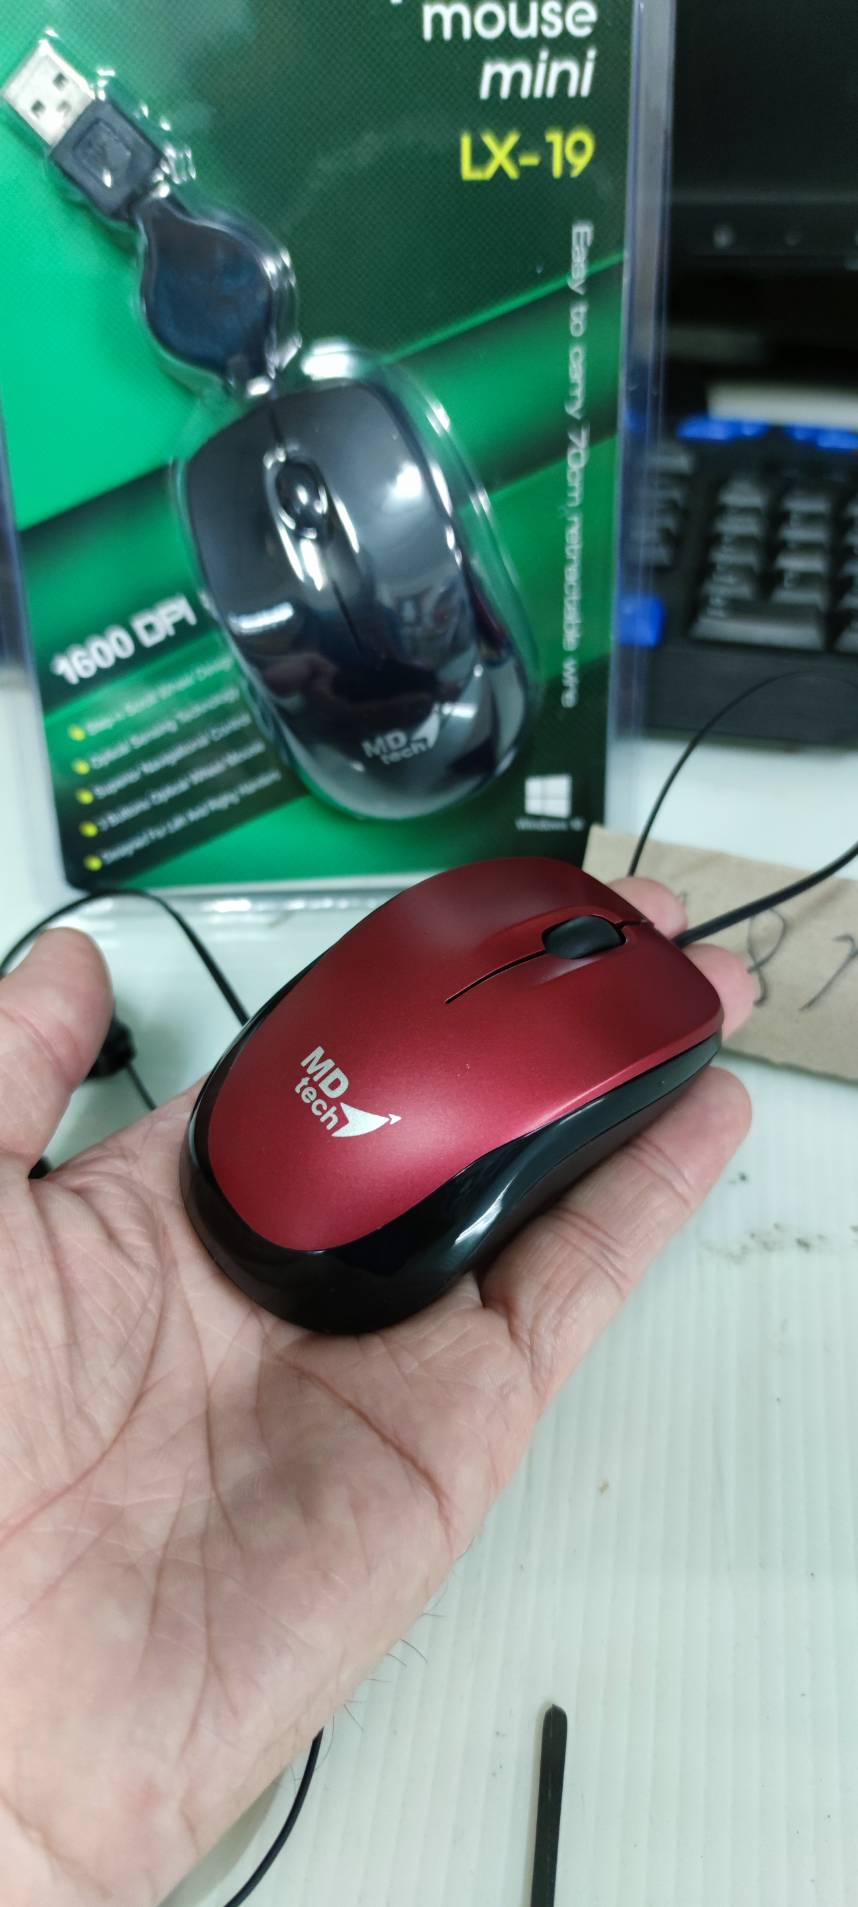 Mouse mini เก็บสาย รุ่นLX-19 ยี่ห้อMDtech